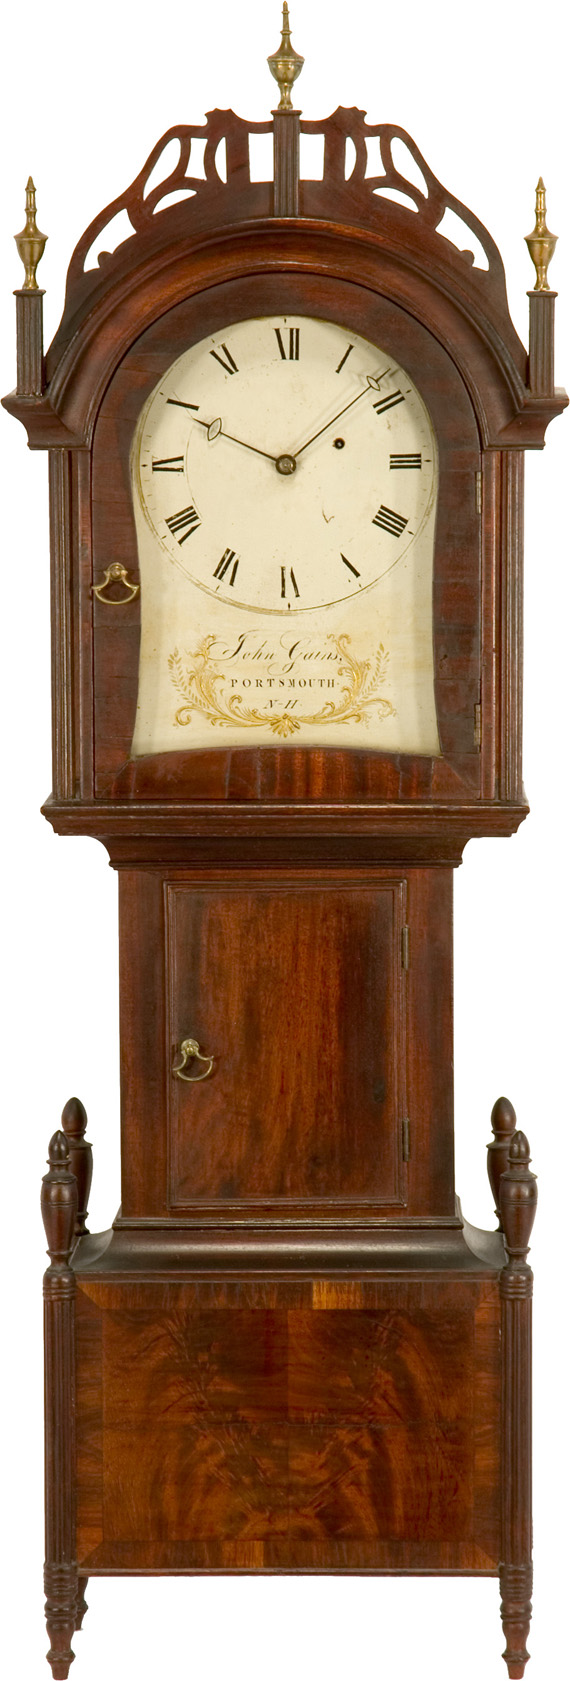 A distinctive Sheraton dwarf clock, by John Gains